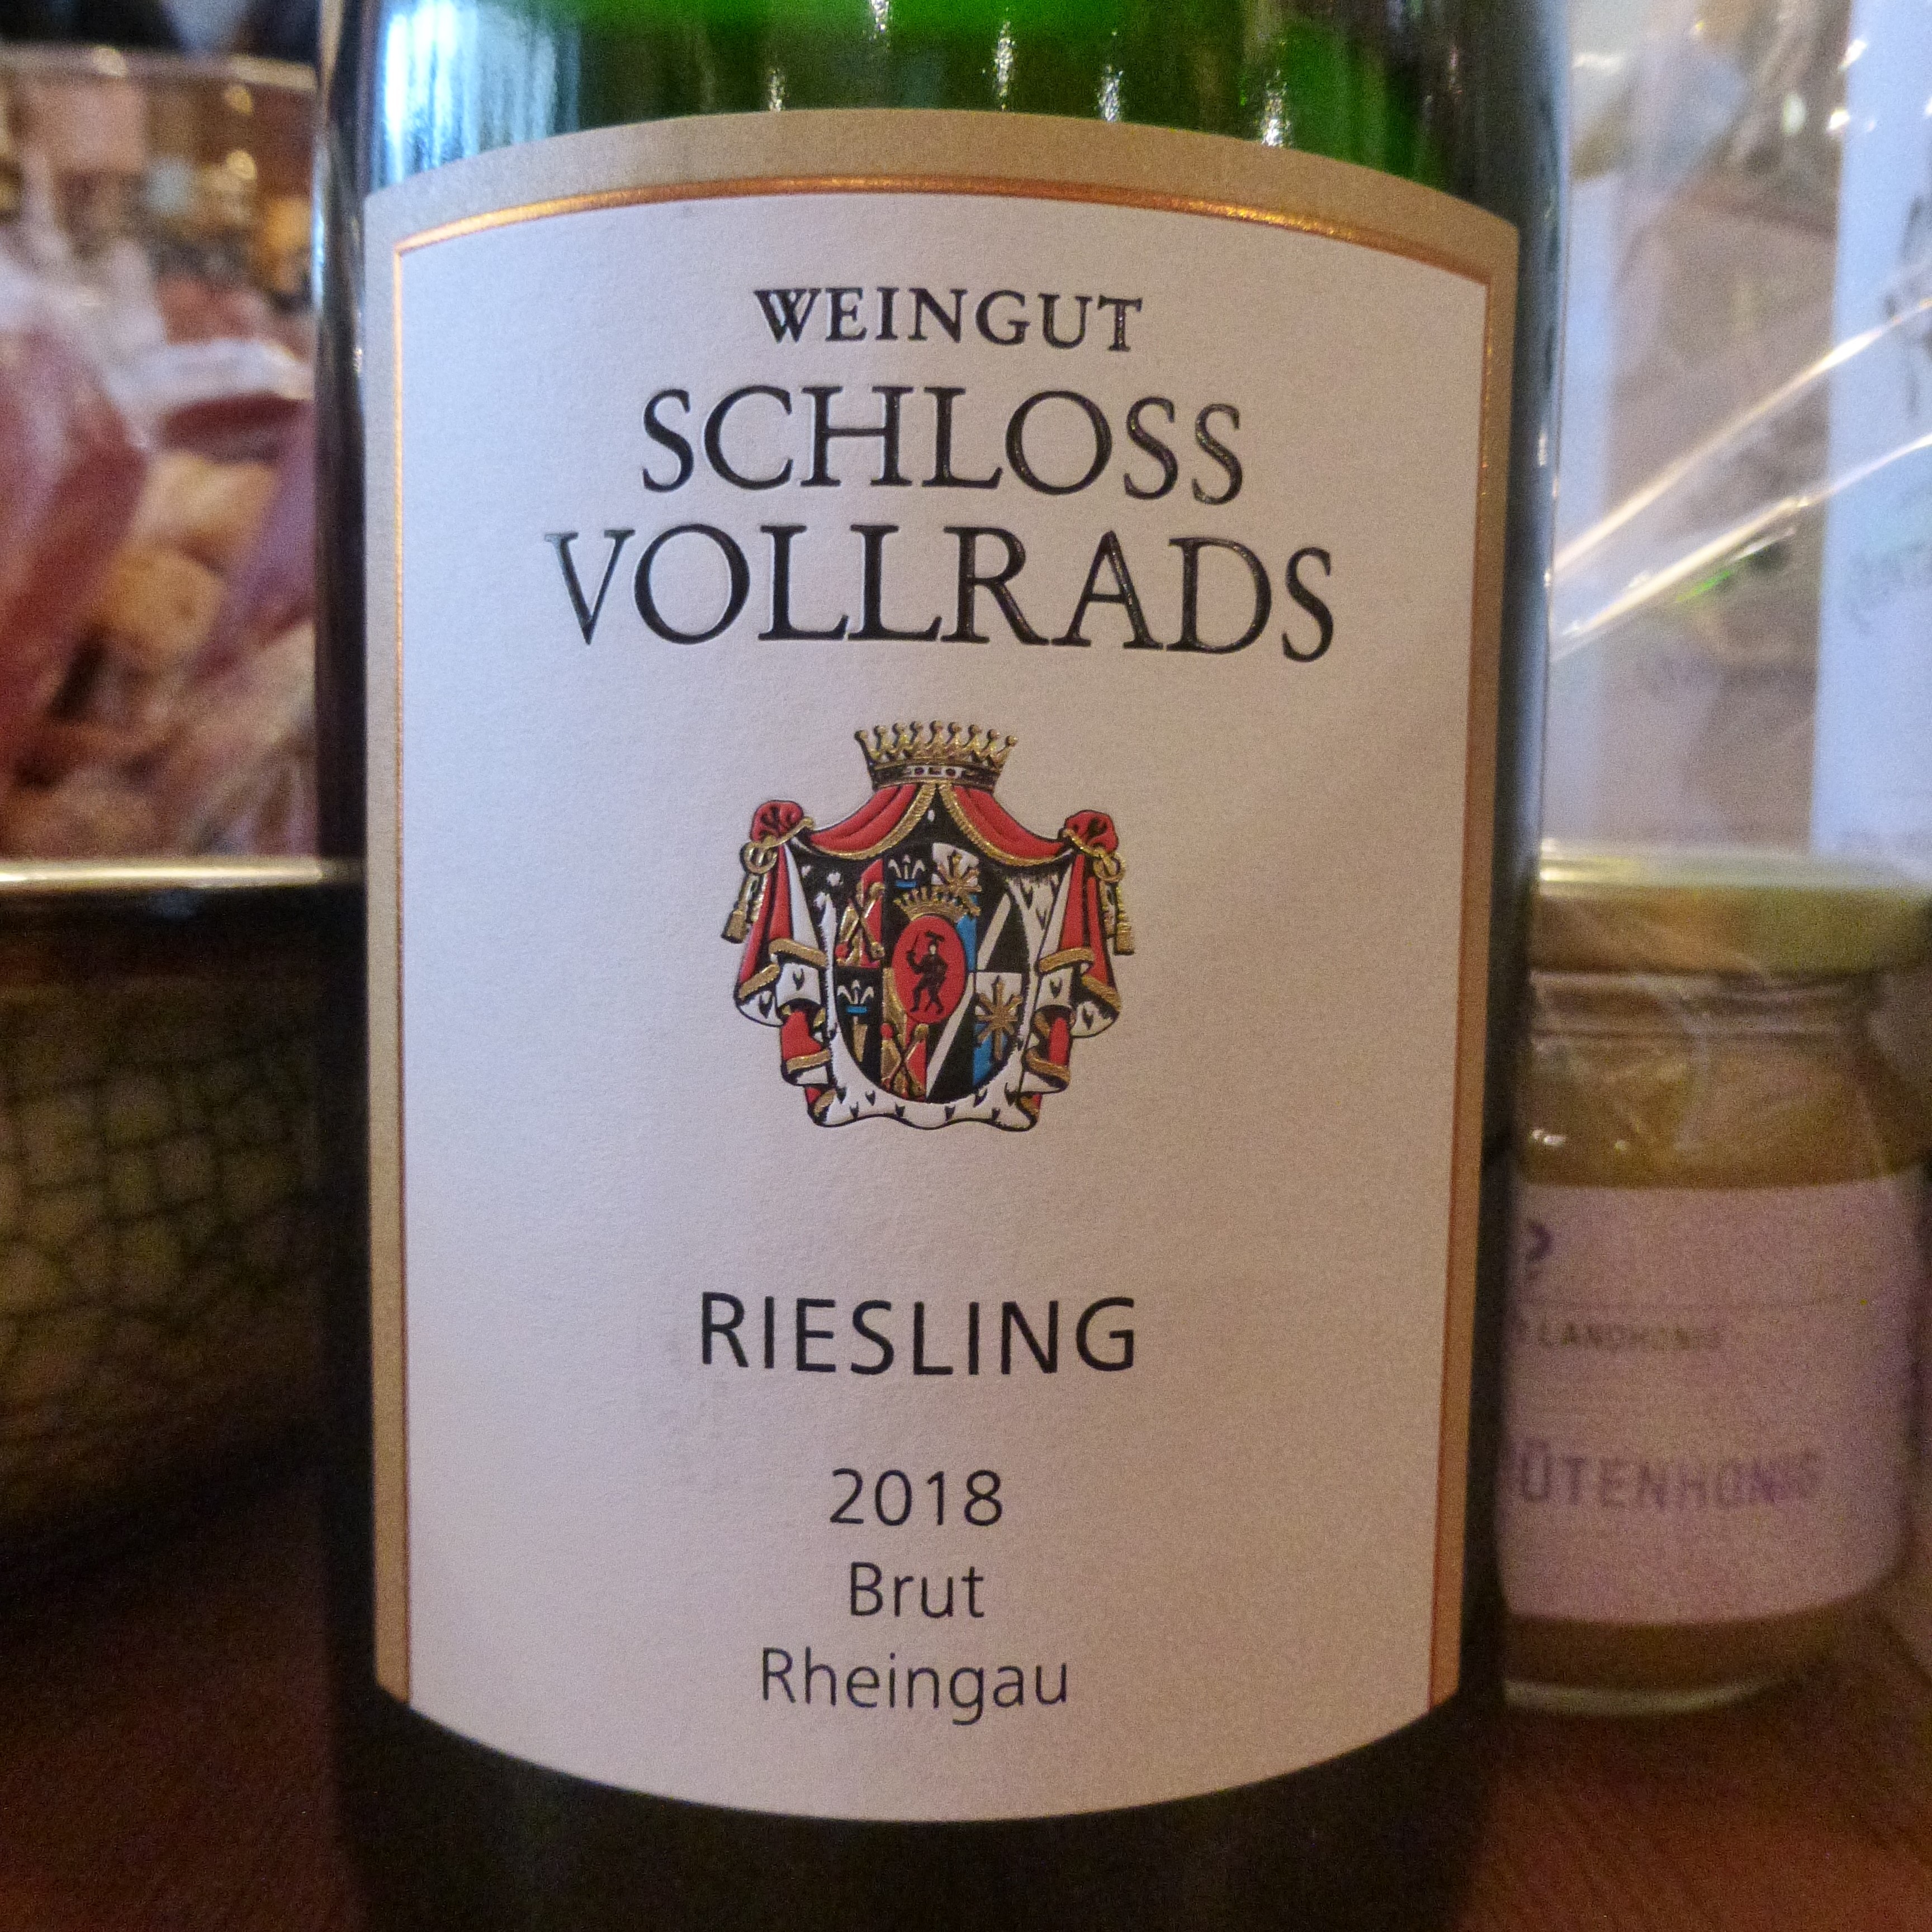 2018 Riesling Brut Rheingau, Weingut Schloss Vollrads